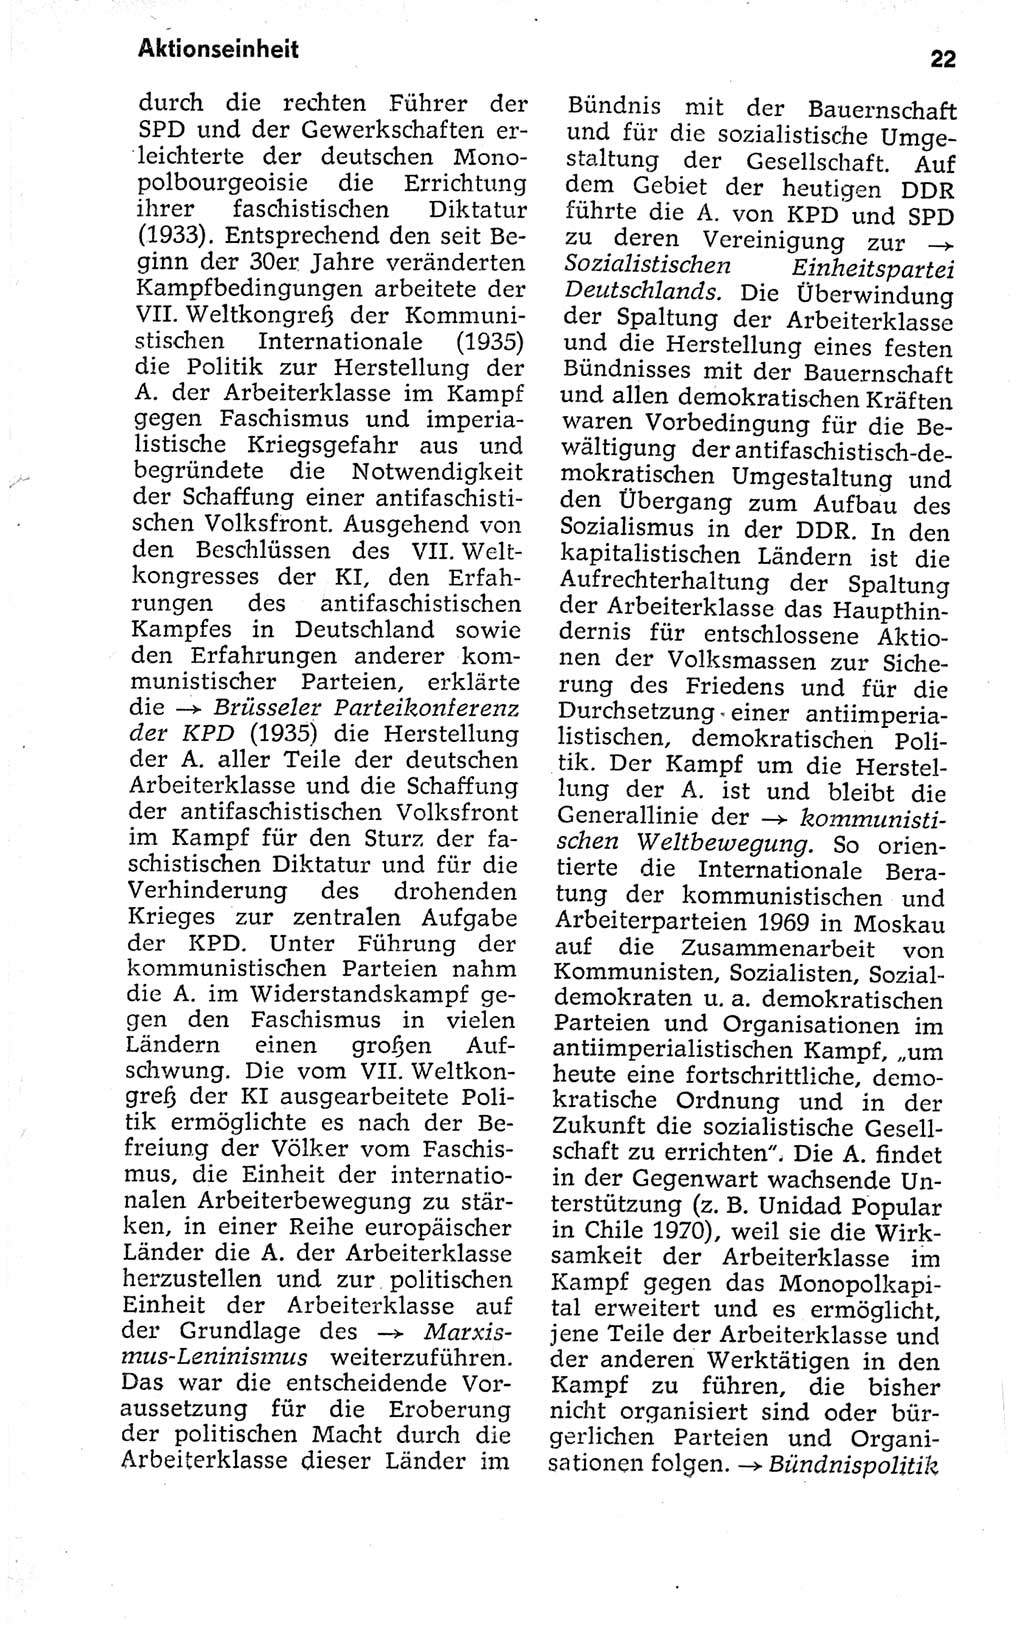 Kleines politisches Wörterbuch [Deutsche Demokratische Republik (DDR)] 1973, Seite 22 (Kl. pol. Wb. DDR 1973, S. 22)